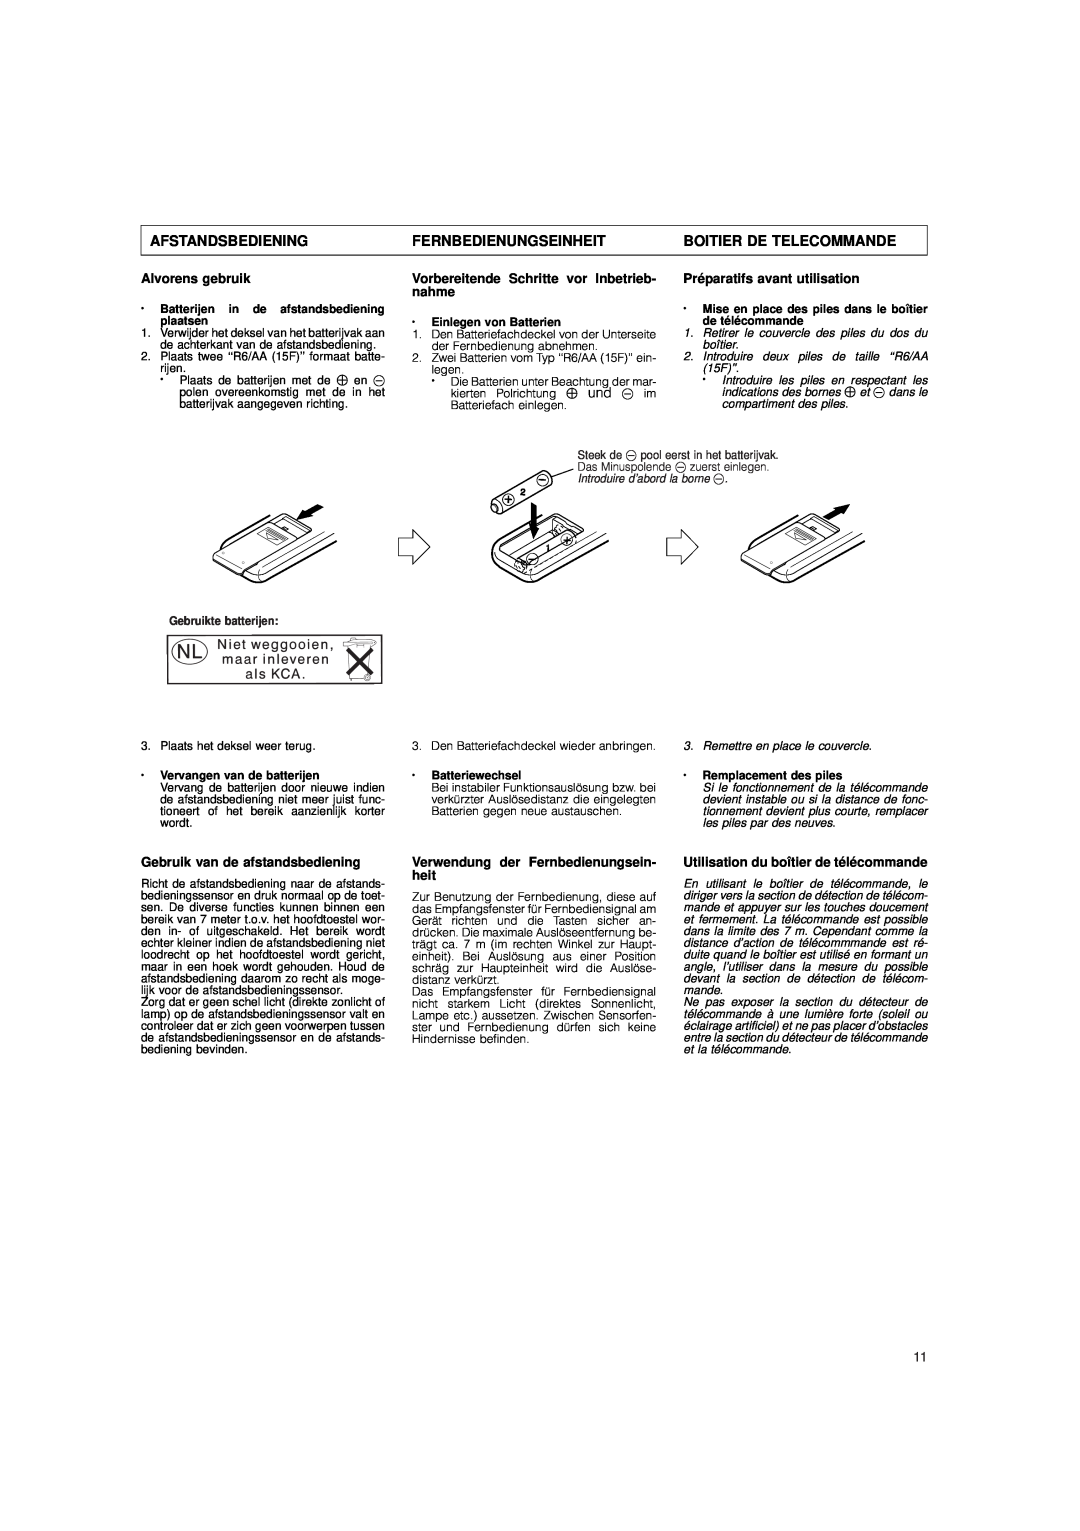 JVC DX-E55 manual Afstandsbediening, Fernbedienungseinheit, Boitier De Telecommande, Alvorens gebruik 